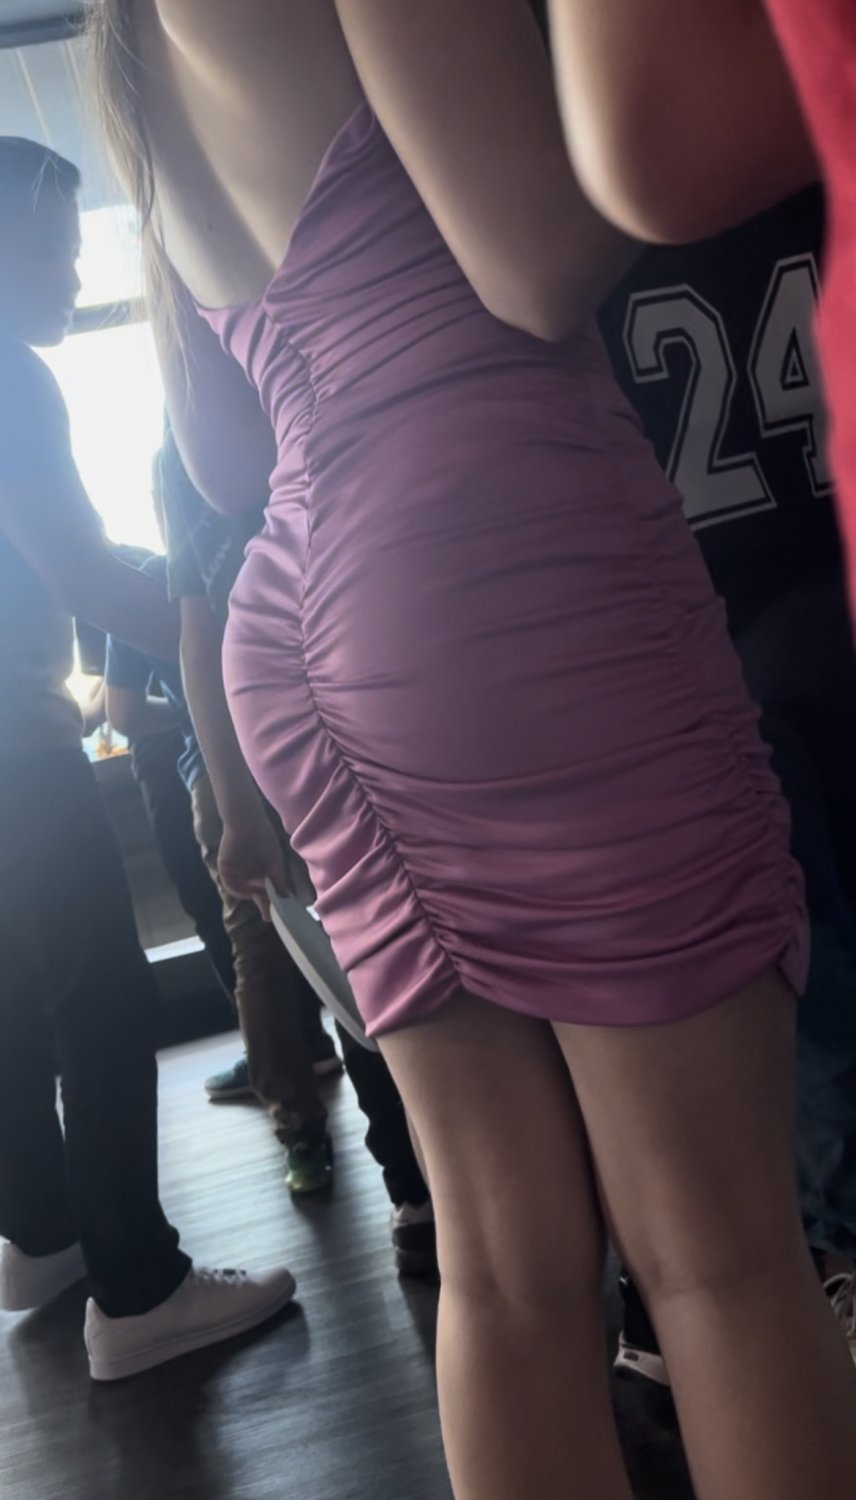 Dress Porn - Hot teen ass tight dress - Porn Videos & Photos - EroMe